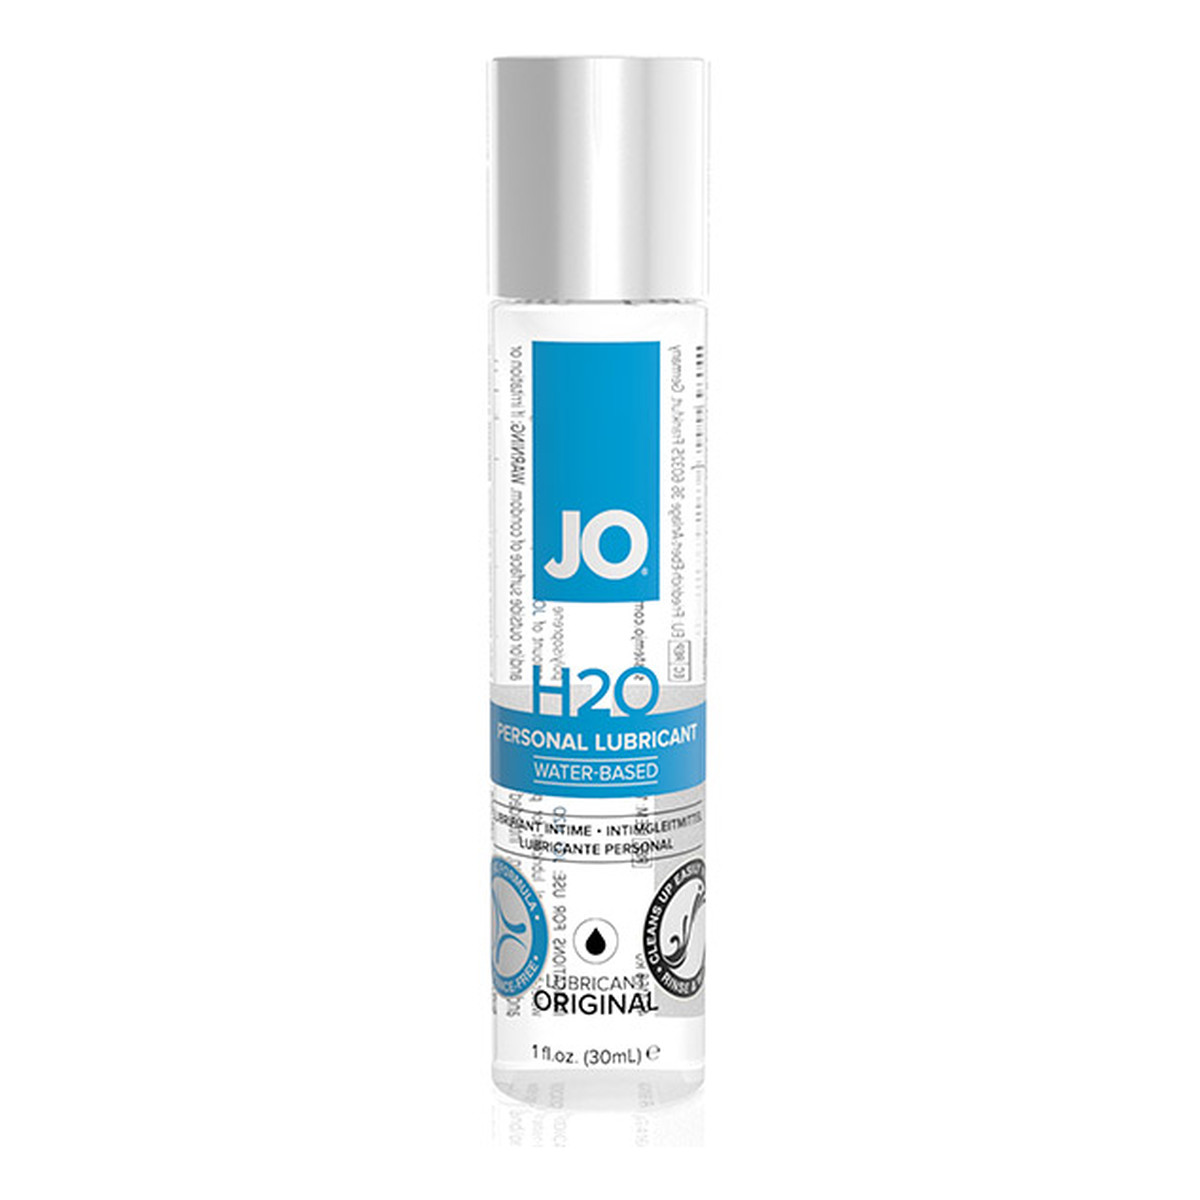 System Jo H2o personal lubricant lubrykant na bazie wody 30ml